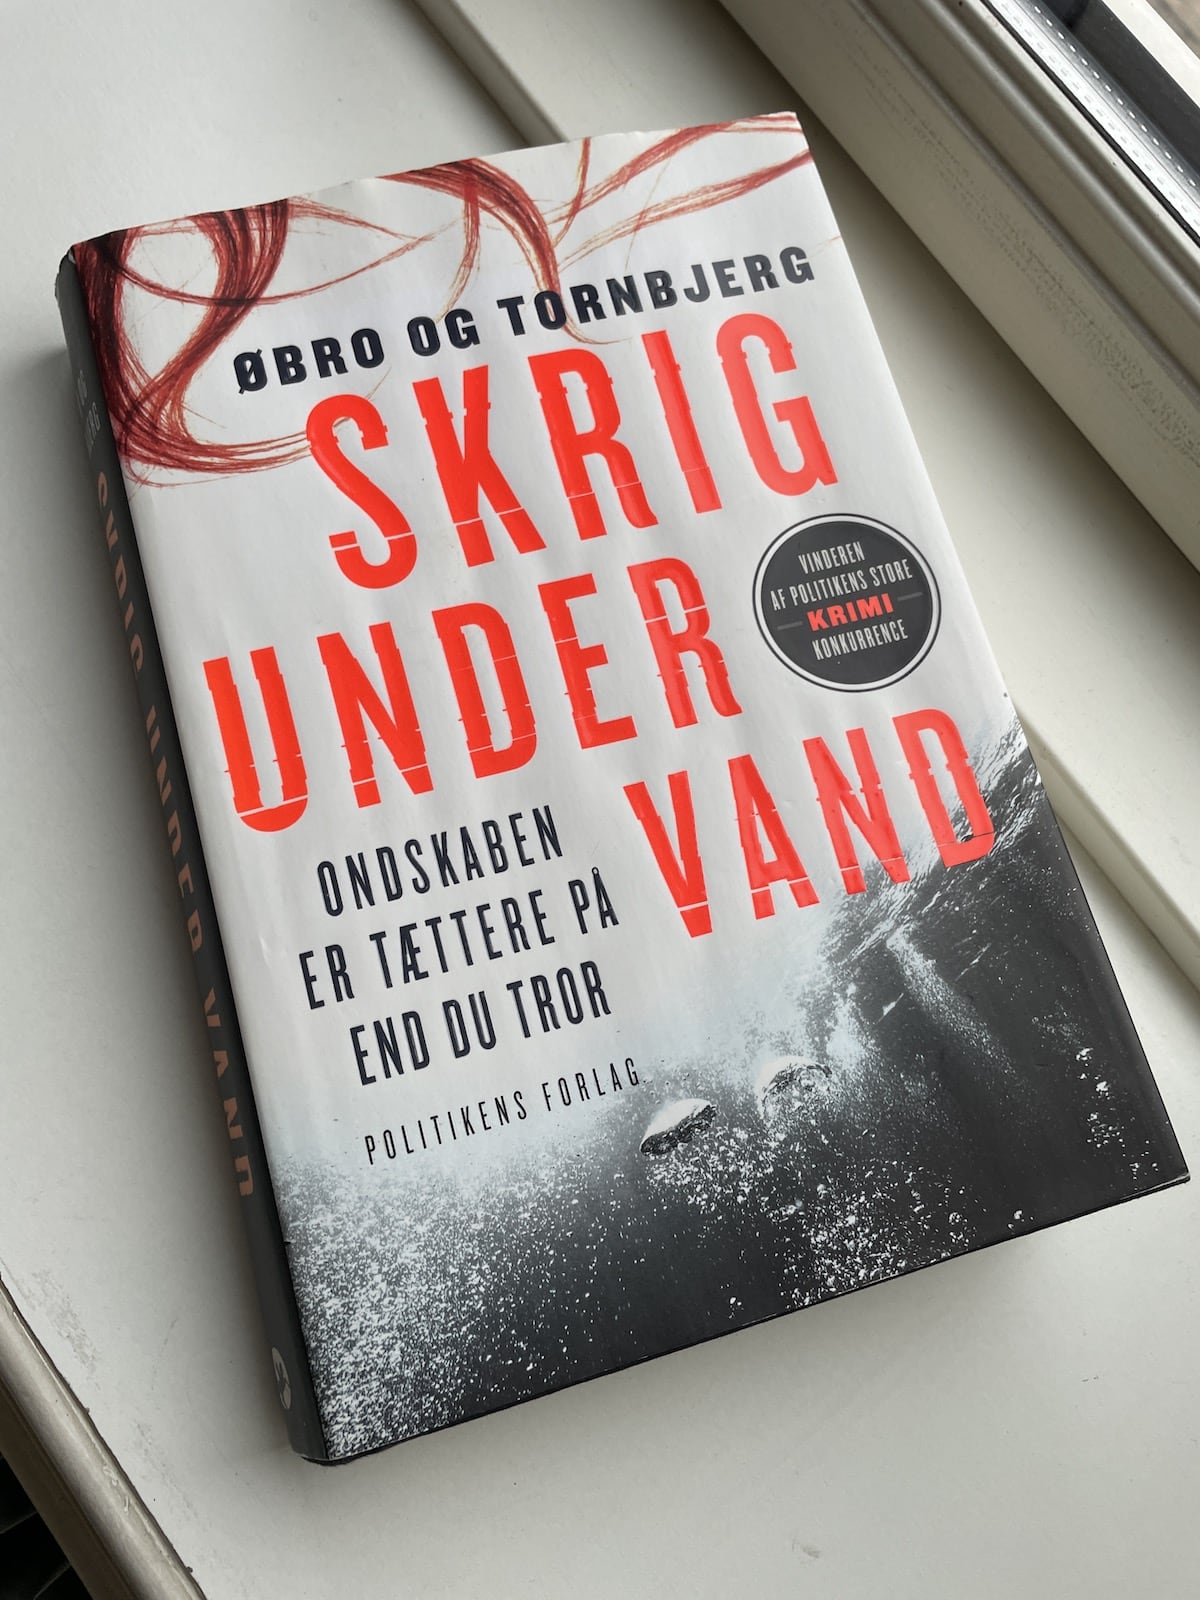 Skrig under vand, Øbro og Tornbjerg, brugt bog